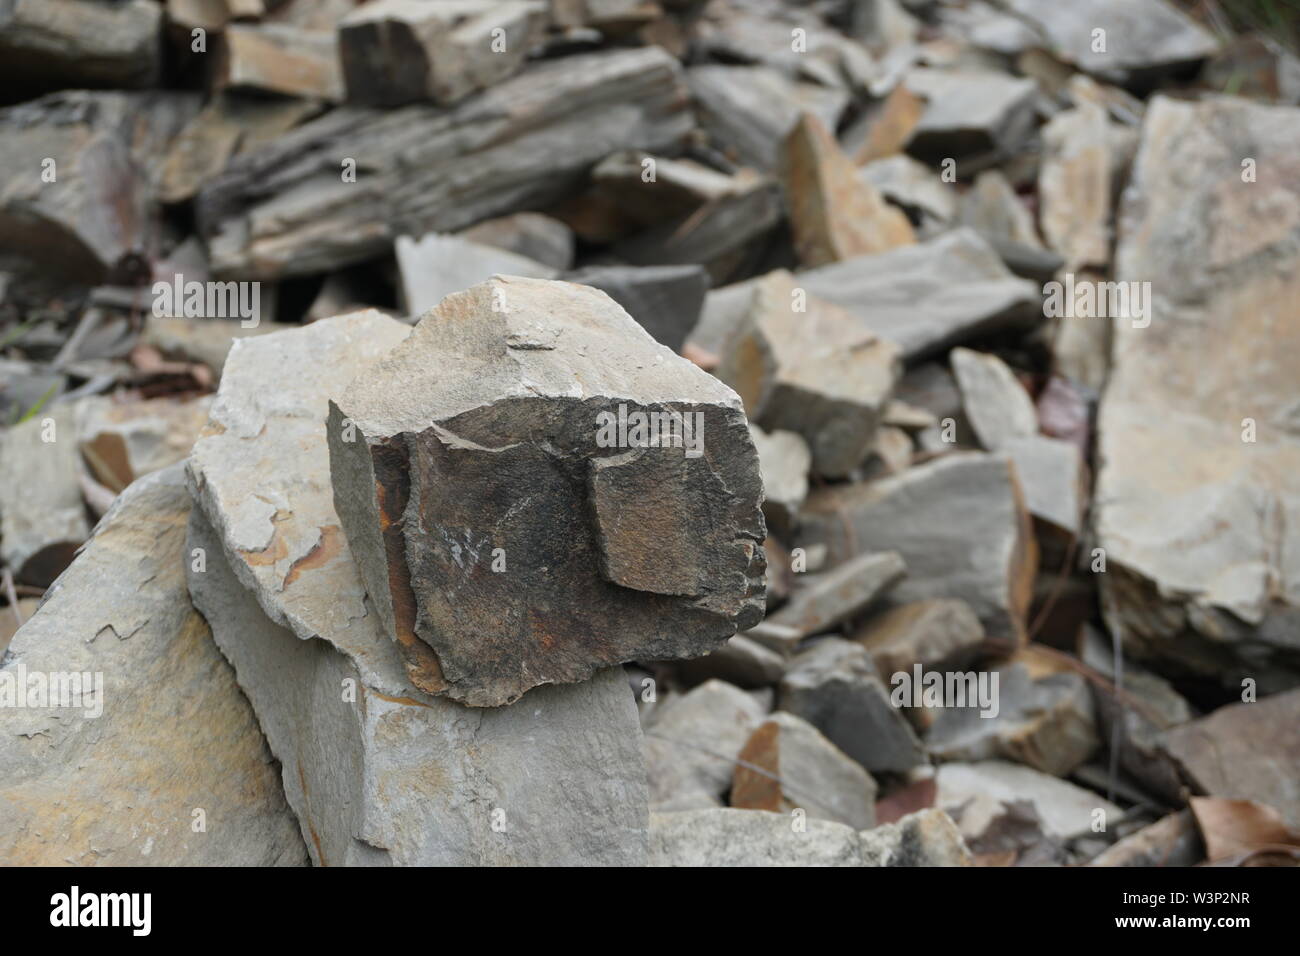 Stapel der Felsen mit einem Rock im Fokus Stockfoto